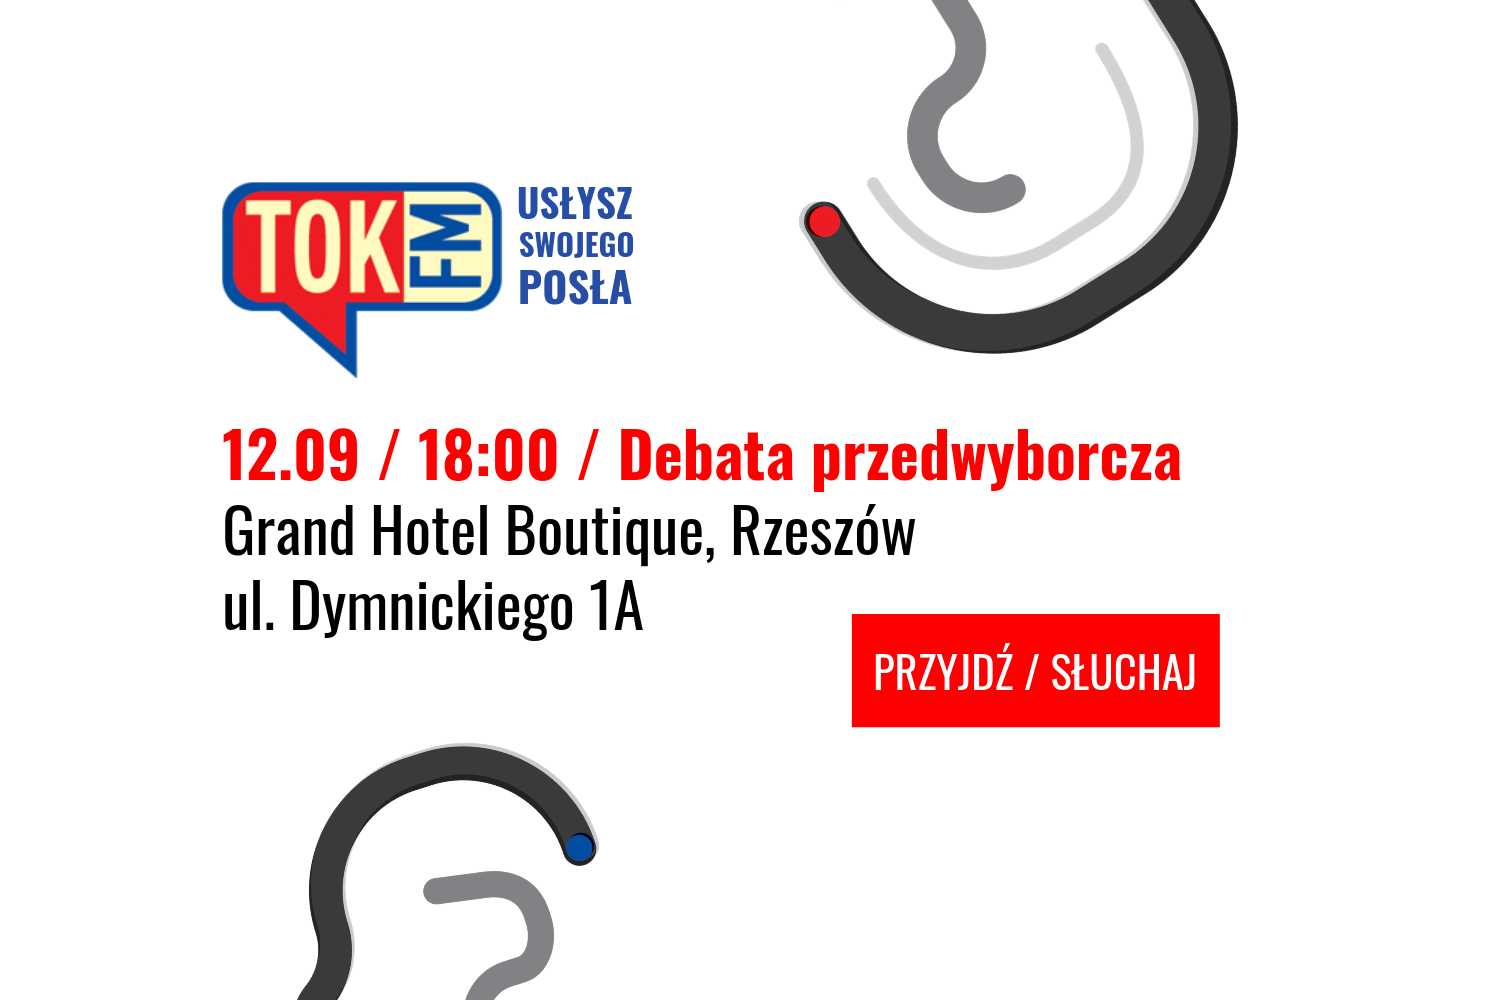 Radio TOK FM zaprasza na pierwszą debatę „Usłysz swojego posła” - w czwartek, 12 września w Rzeszowie